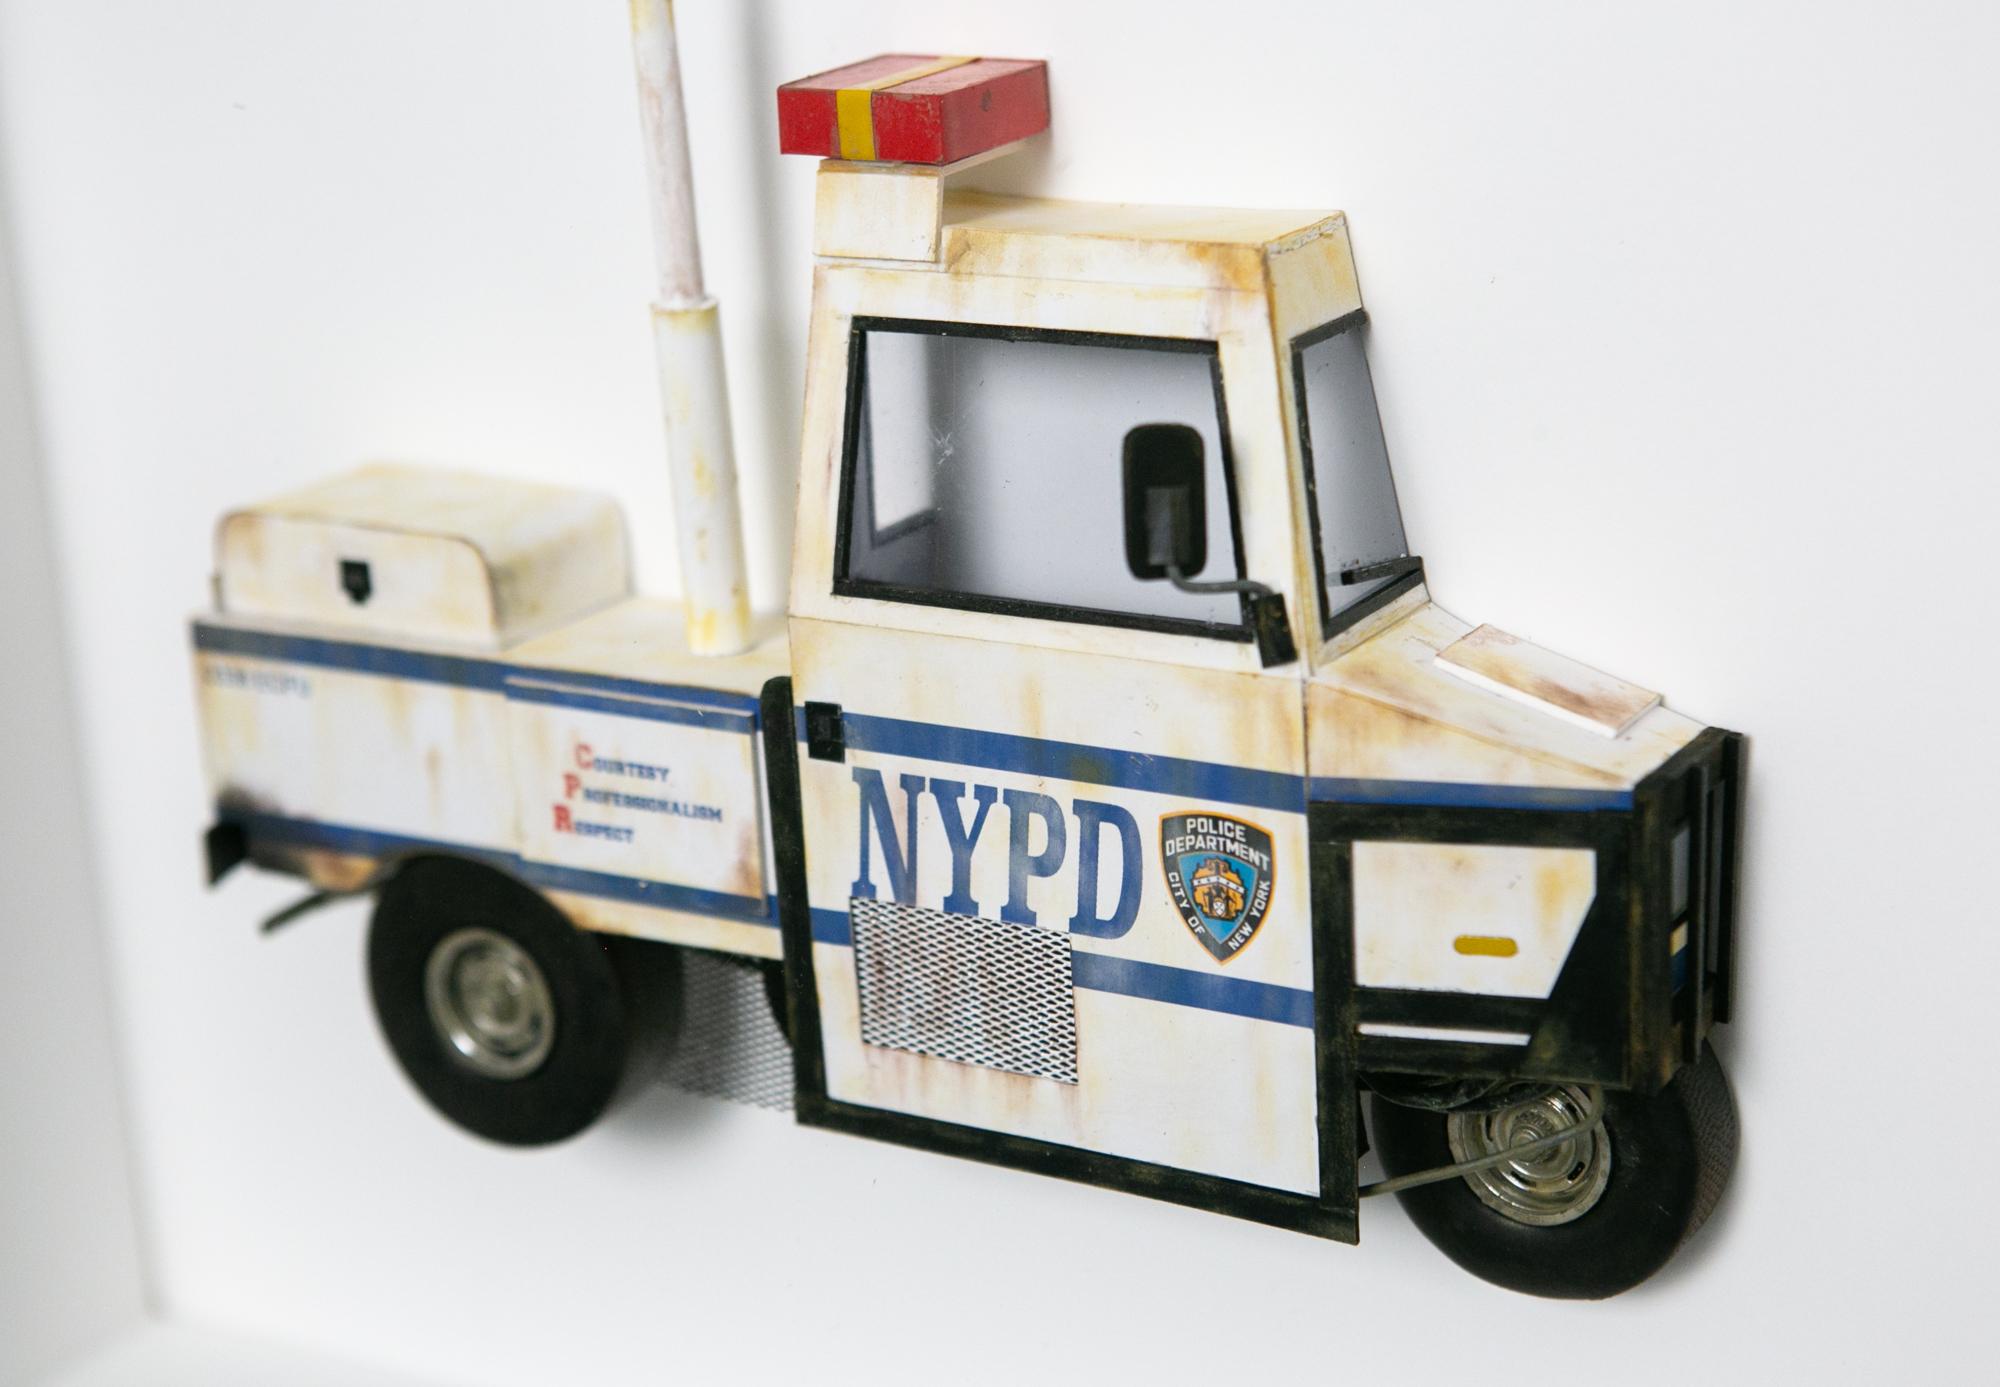 NYPD Interceptor - Contemporary Mixed Media Art by Drew Leshko